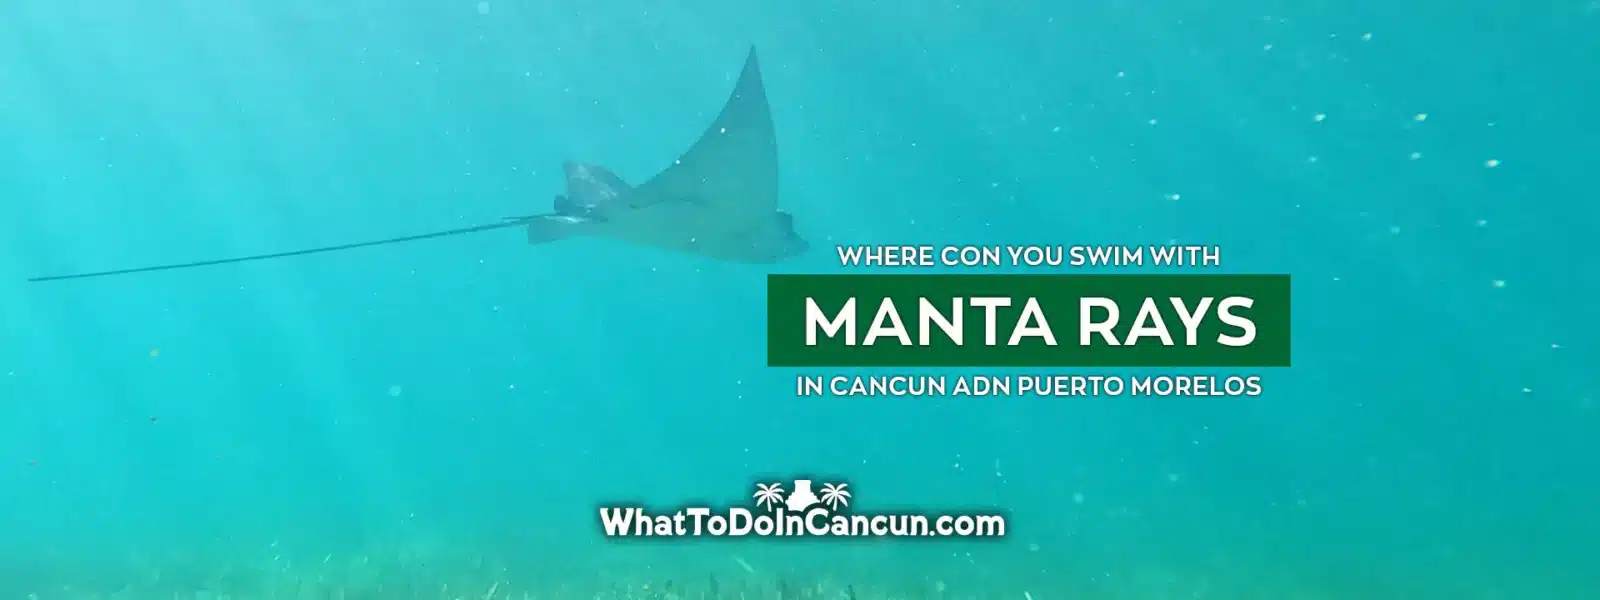 swim-with-manta-rays